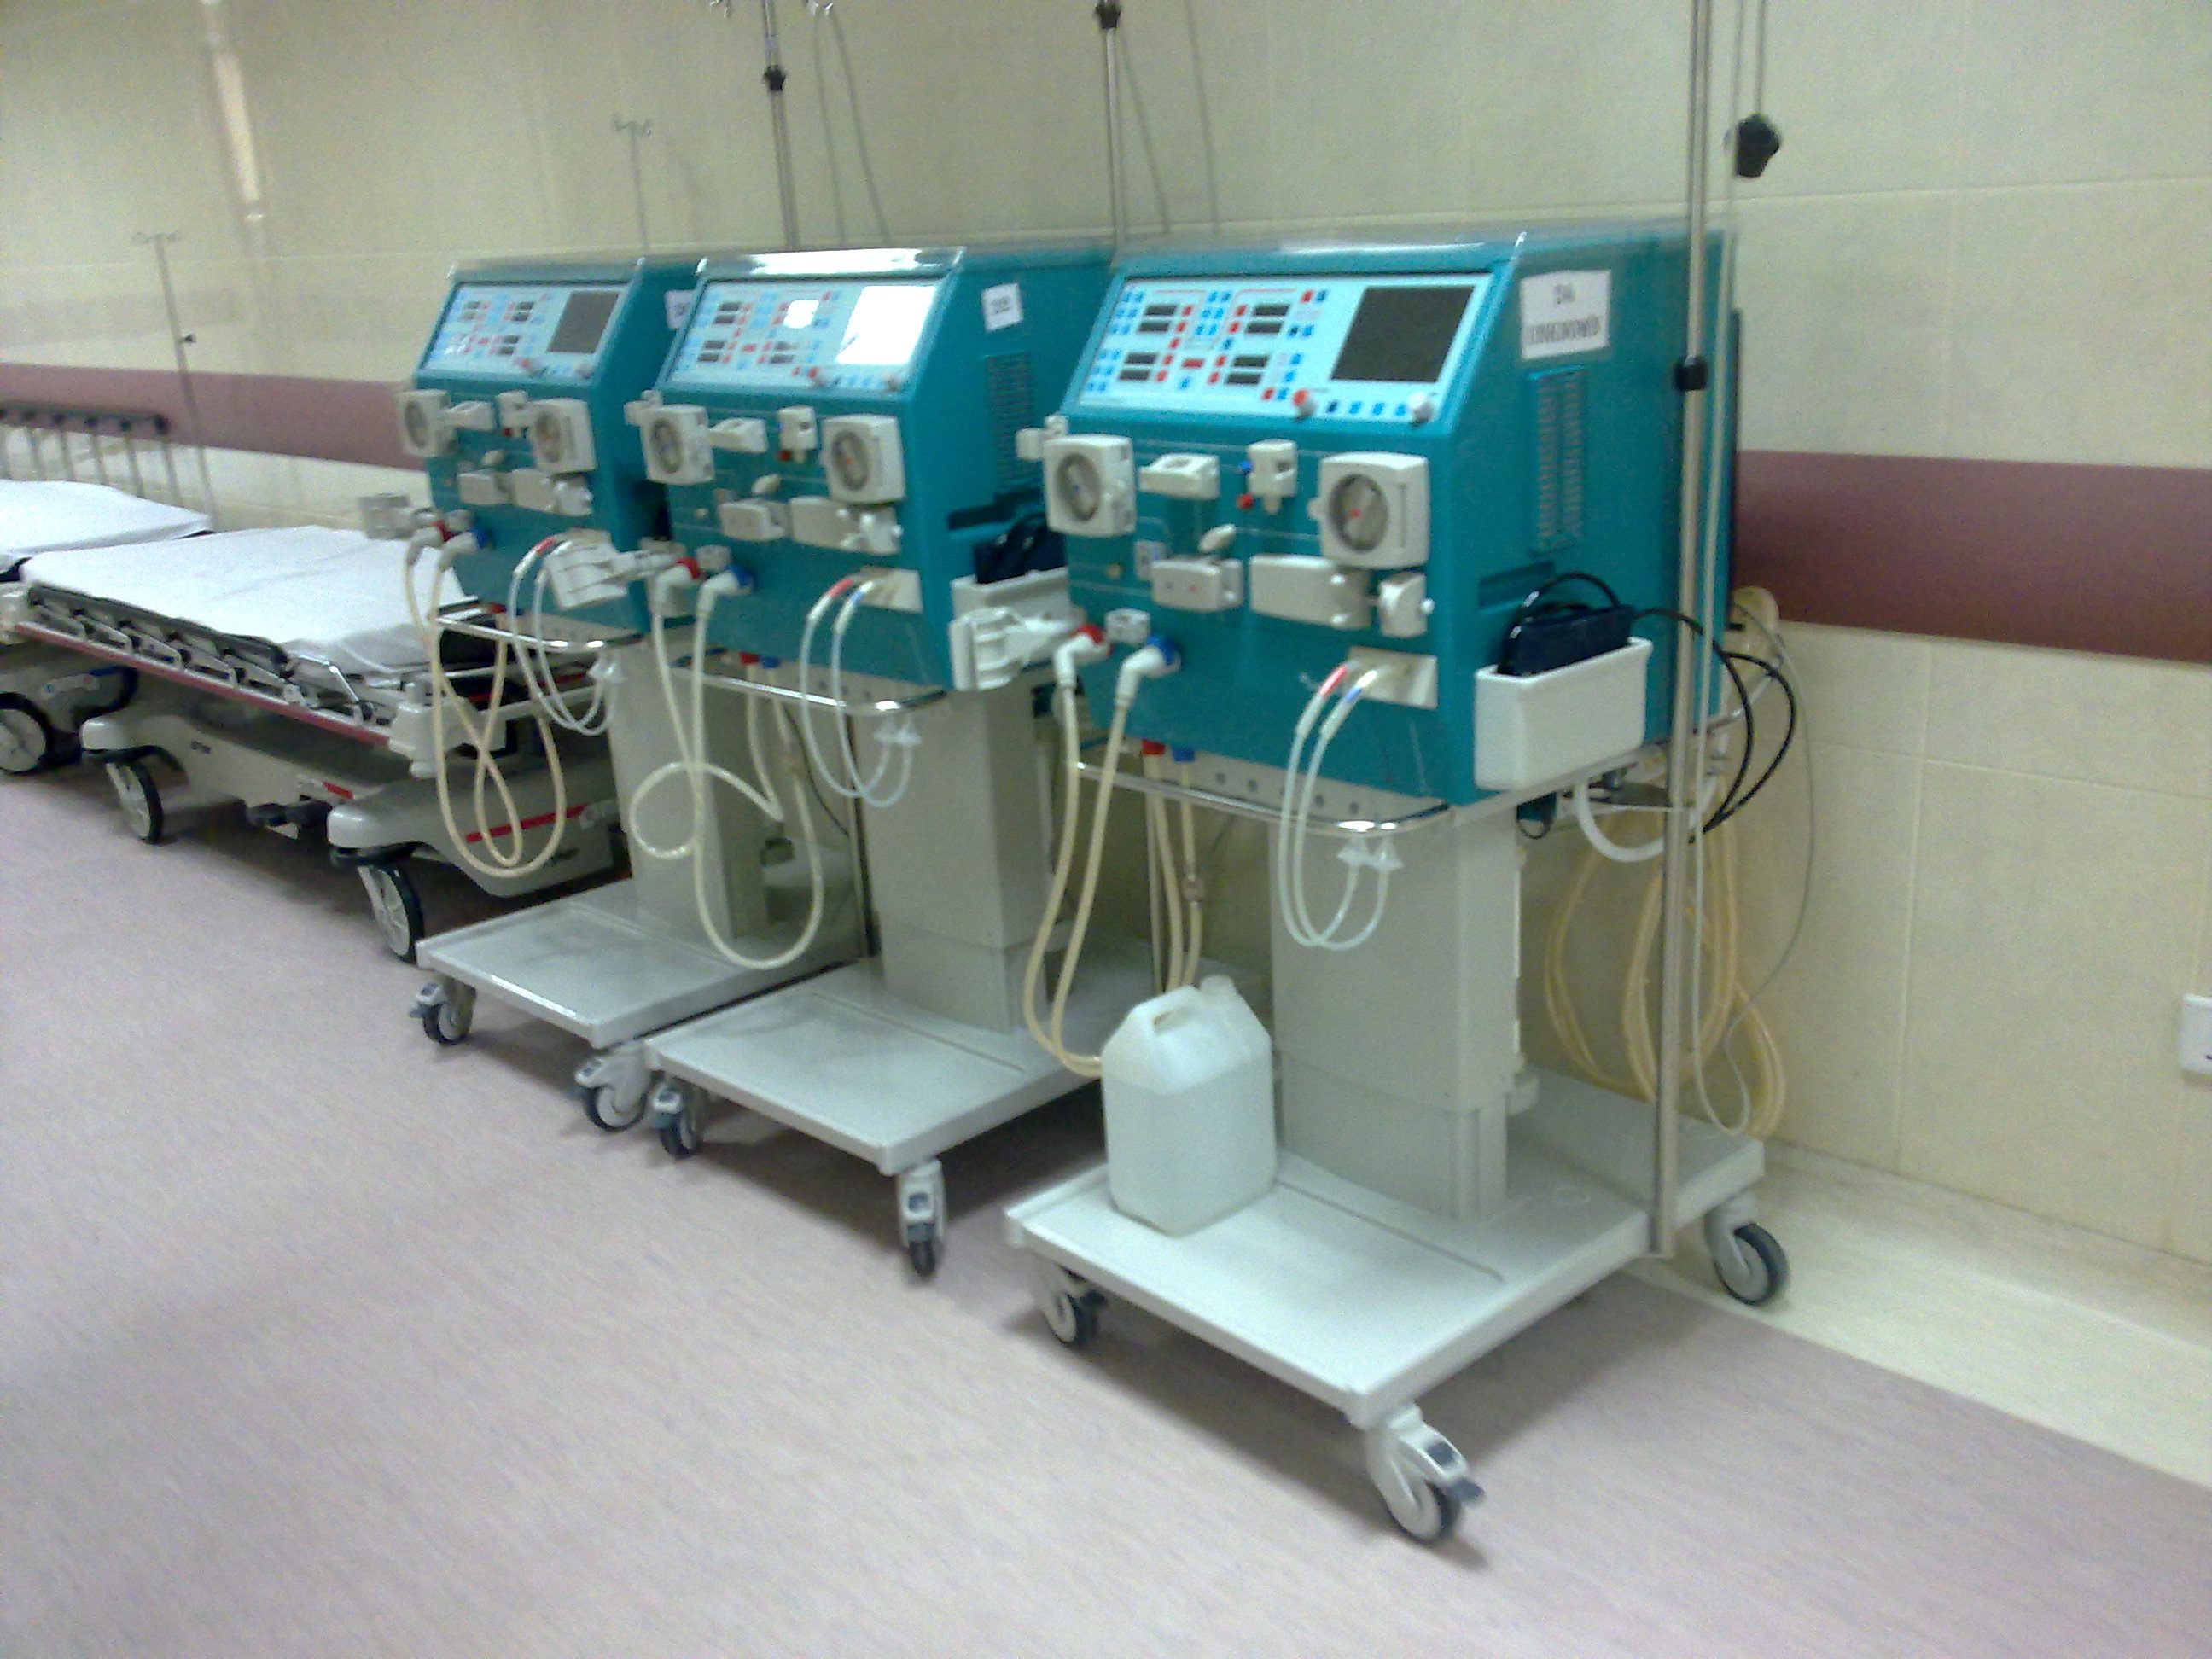 Dialysis Treatment Machines